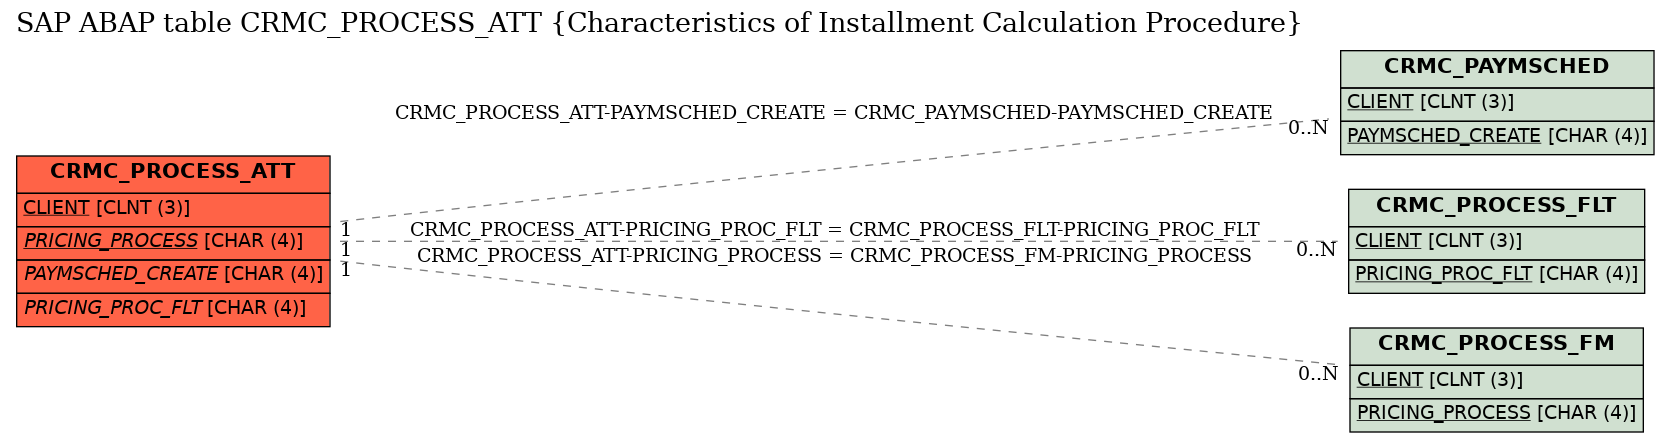 E-R Diagram for table CRMC_PROCESS_ATT (Characteristics of Installment Calculation Procedure)